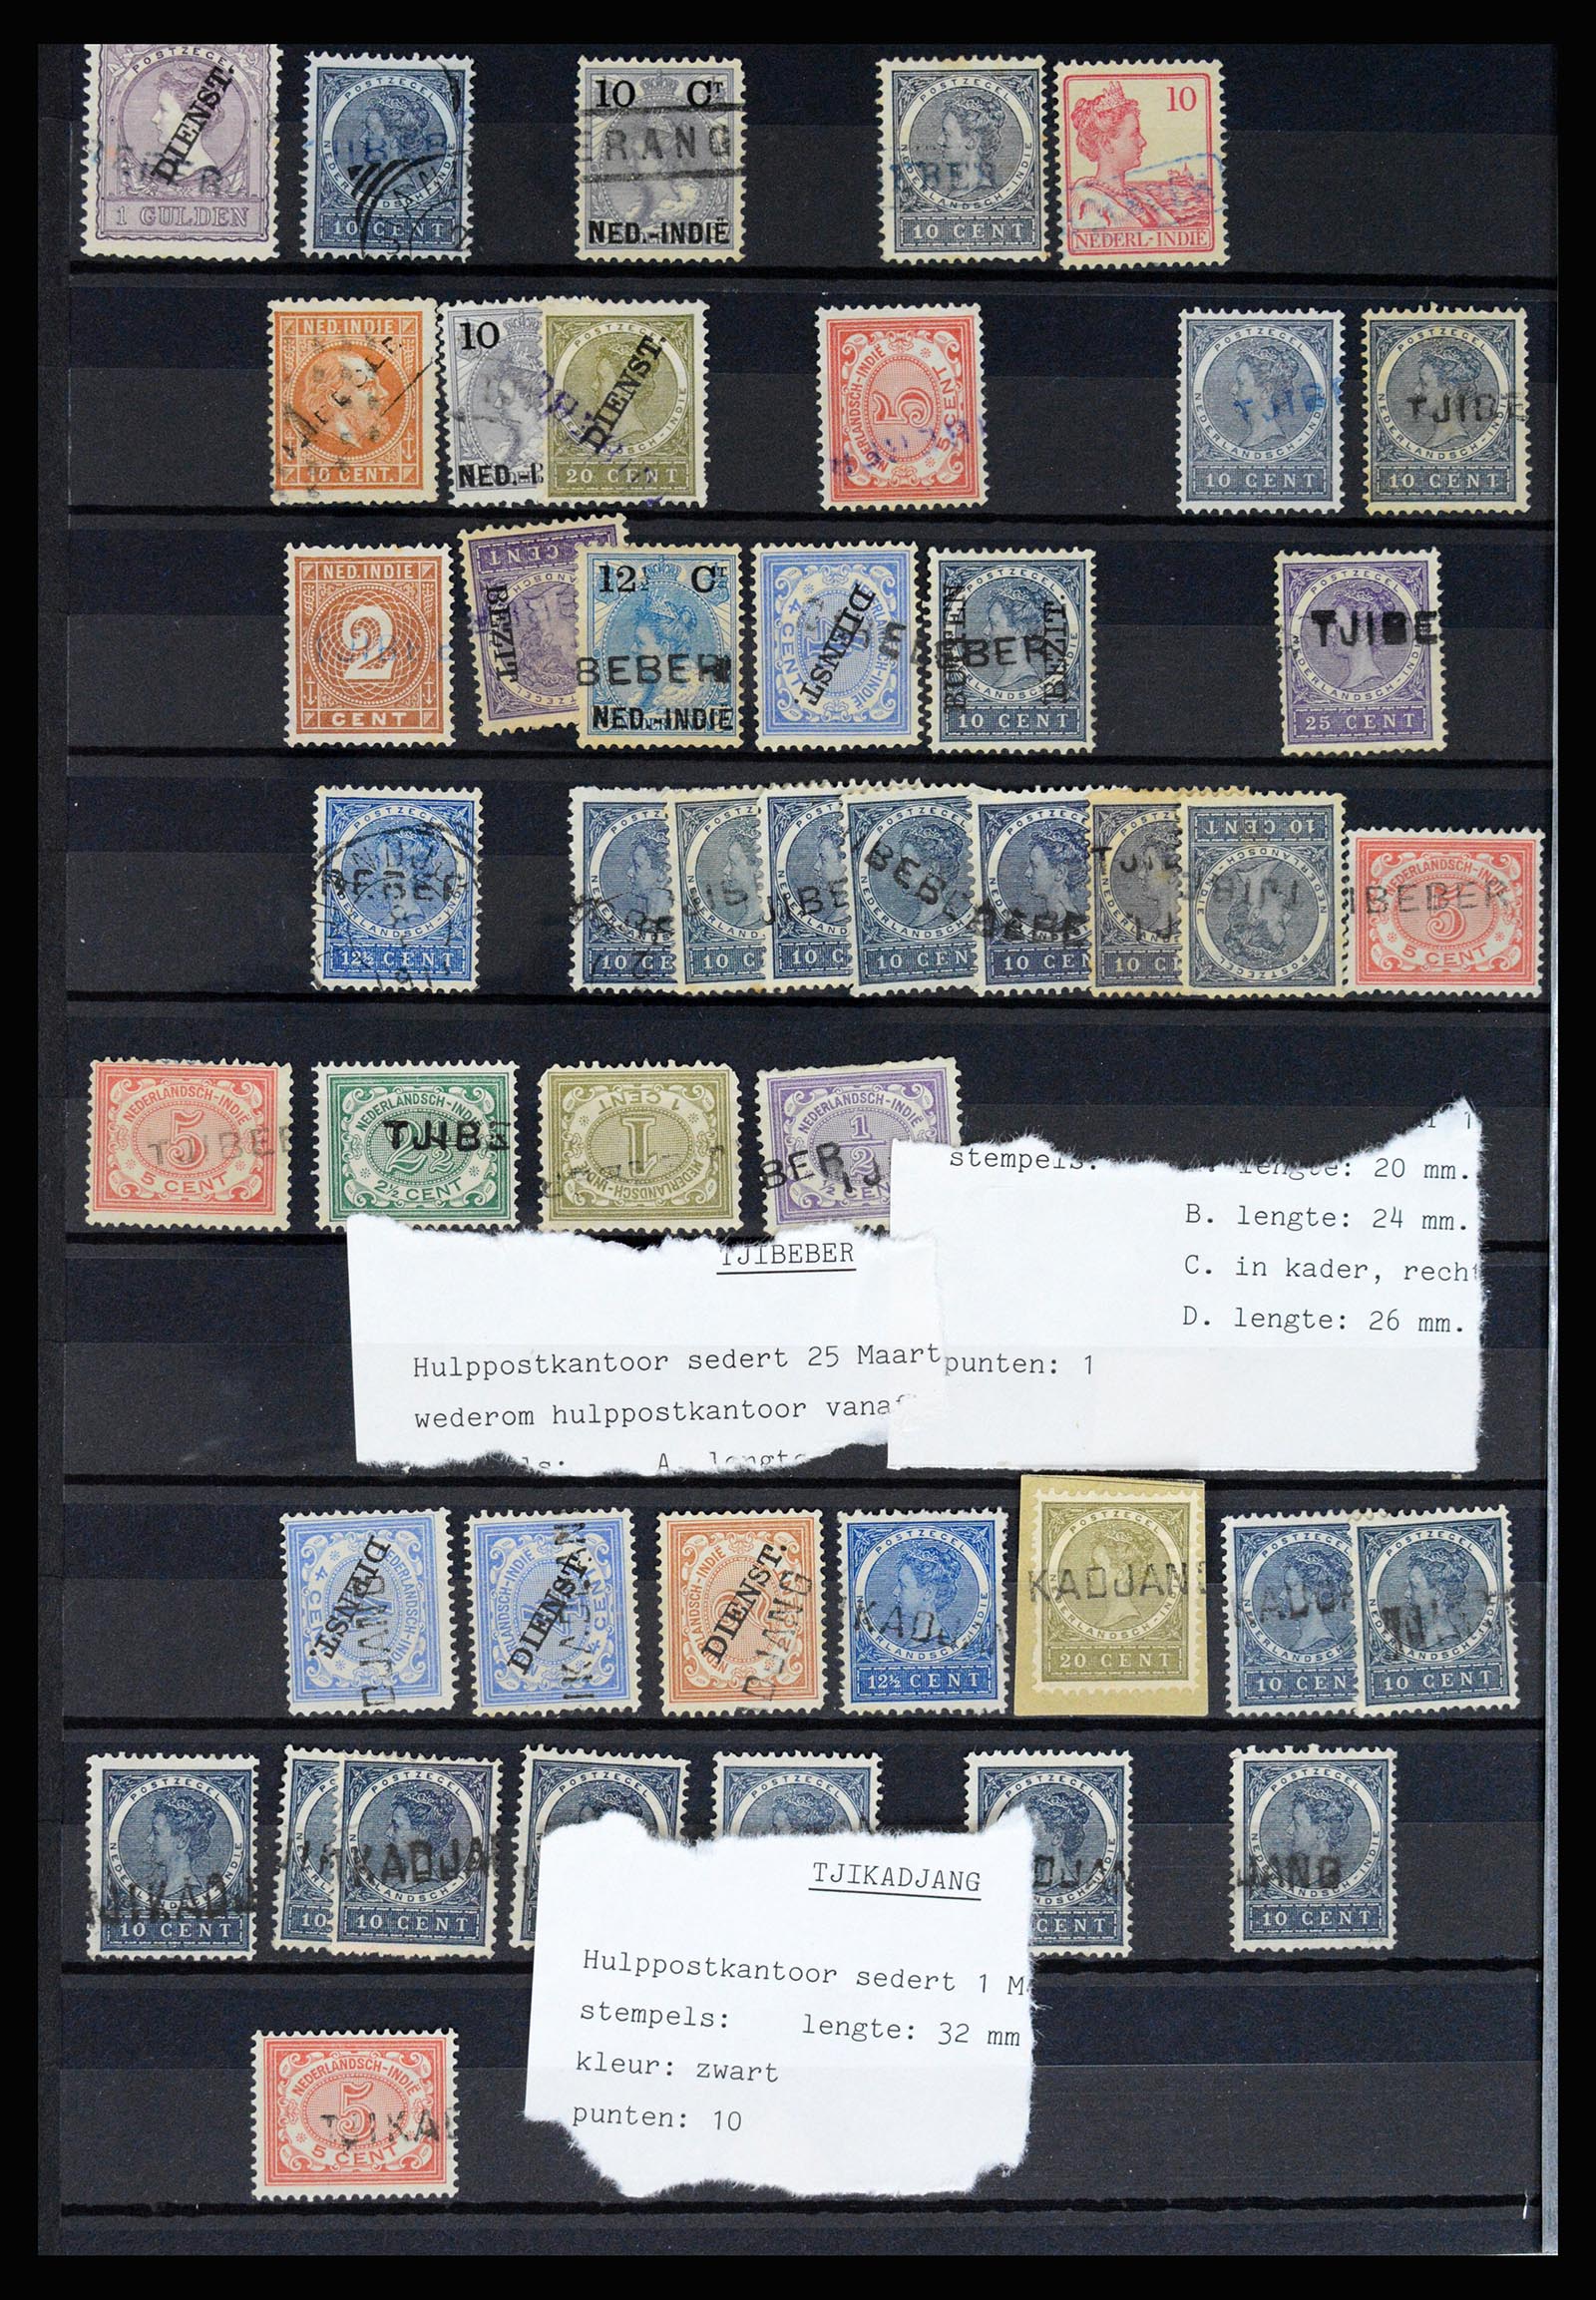 36512 072 - Stamp collection 36512 Nederlands Indië stempels 1872-1930.